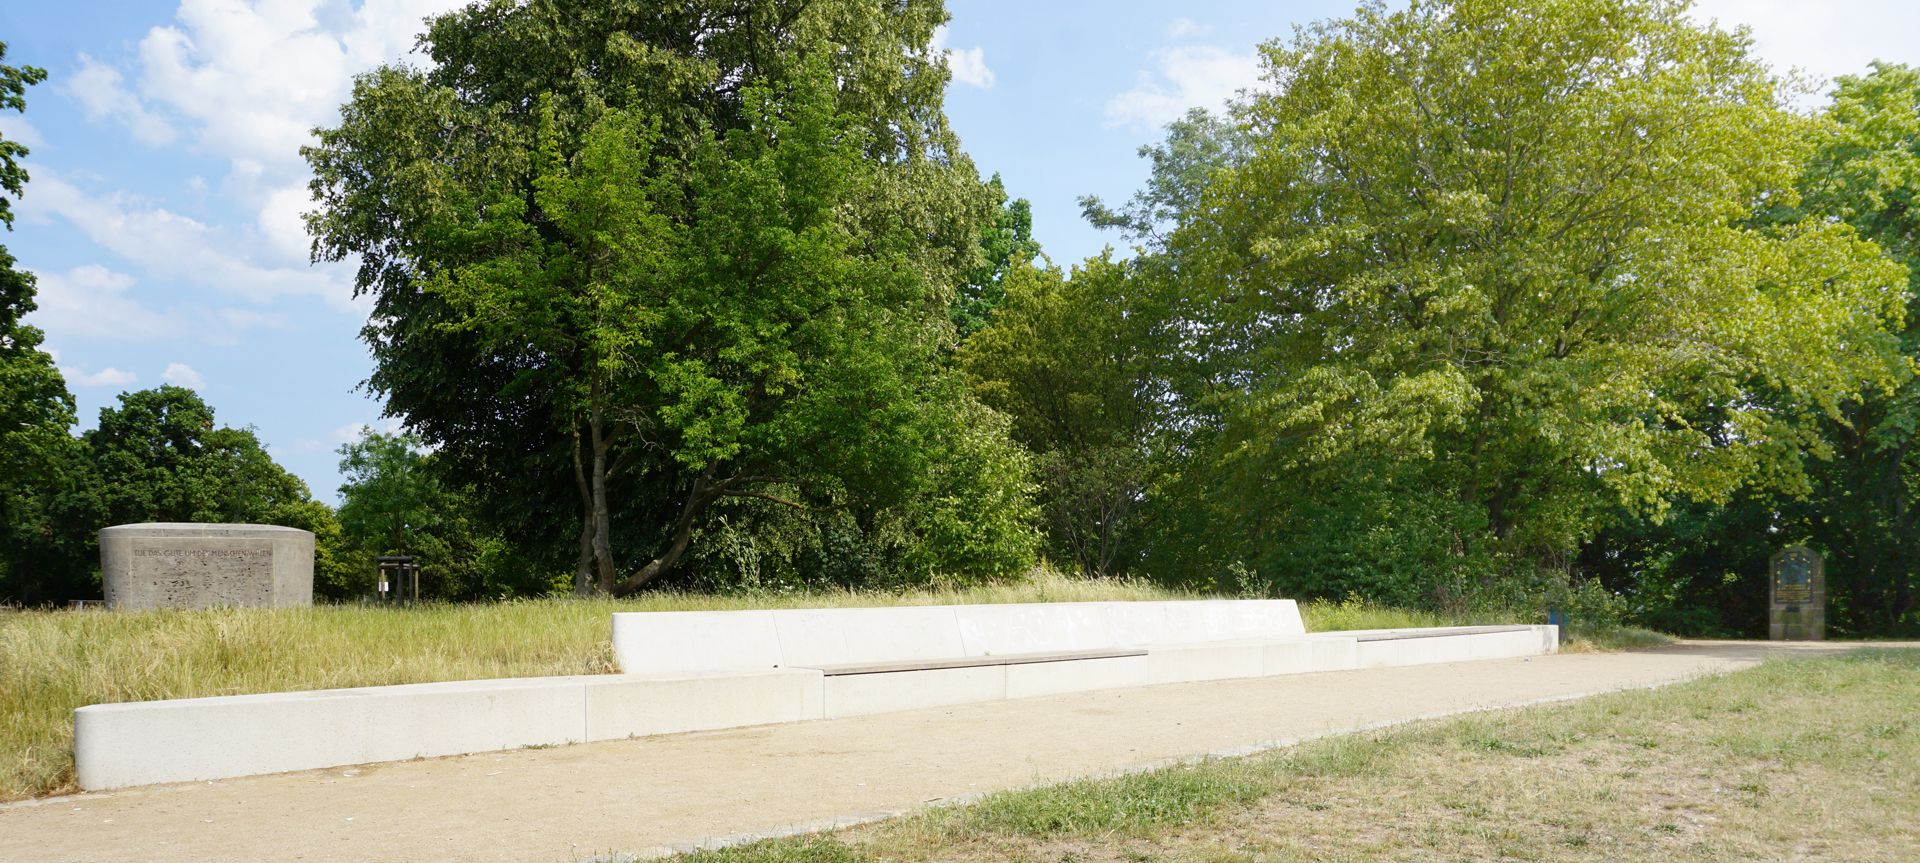 Commemorative plaque, Ludwig Andreas Feuerbach "Panoramabank" auf dem Rechenberg, links Denkmal von 1955, rechts Gedenktafel von 1906 (Standort seit 1999)